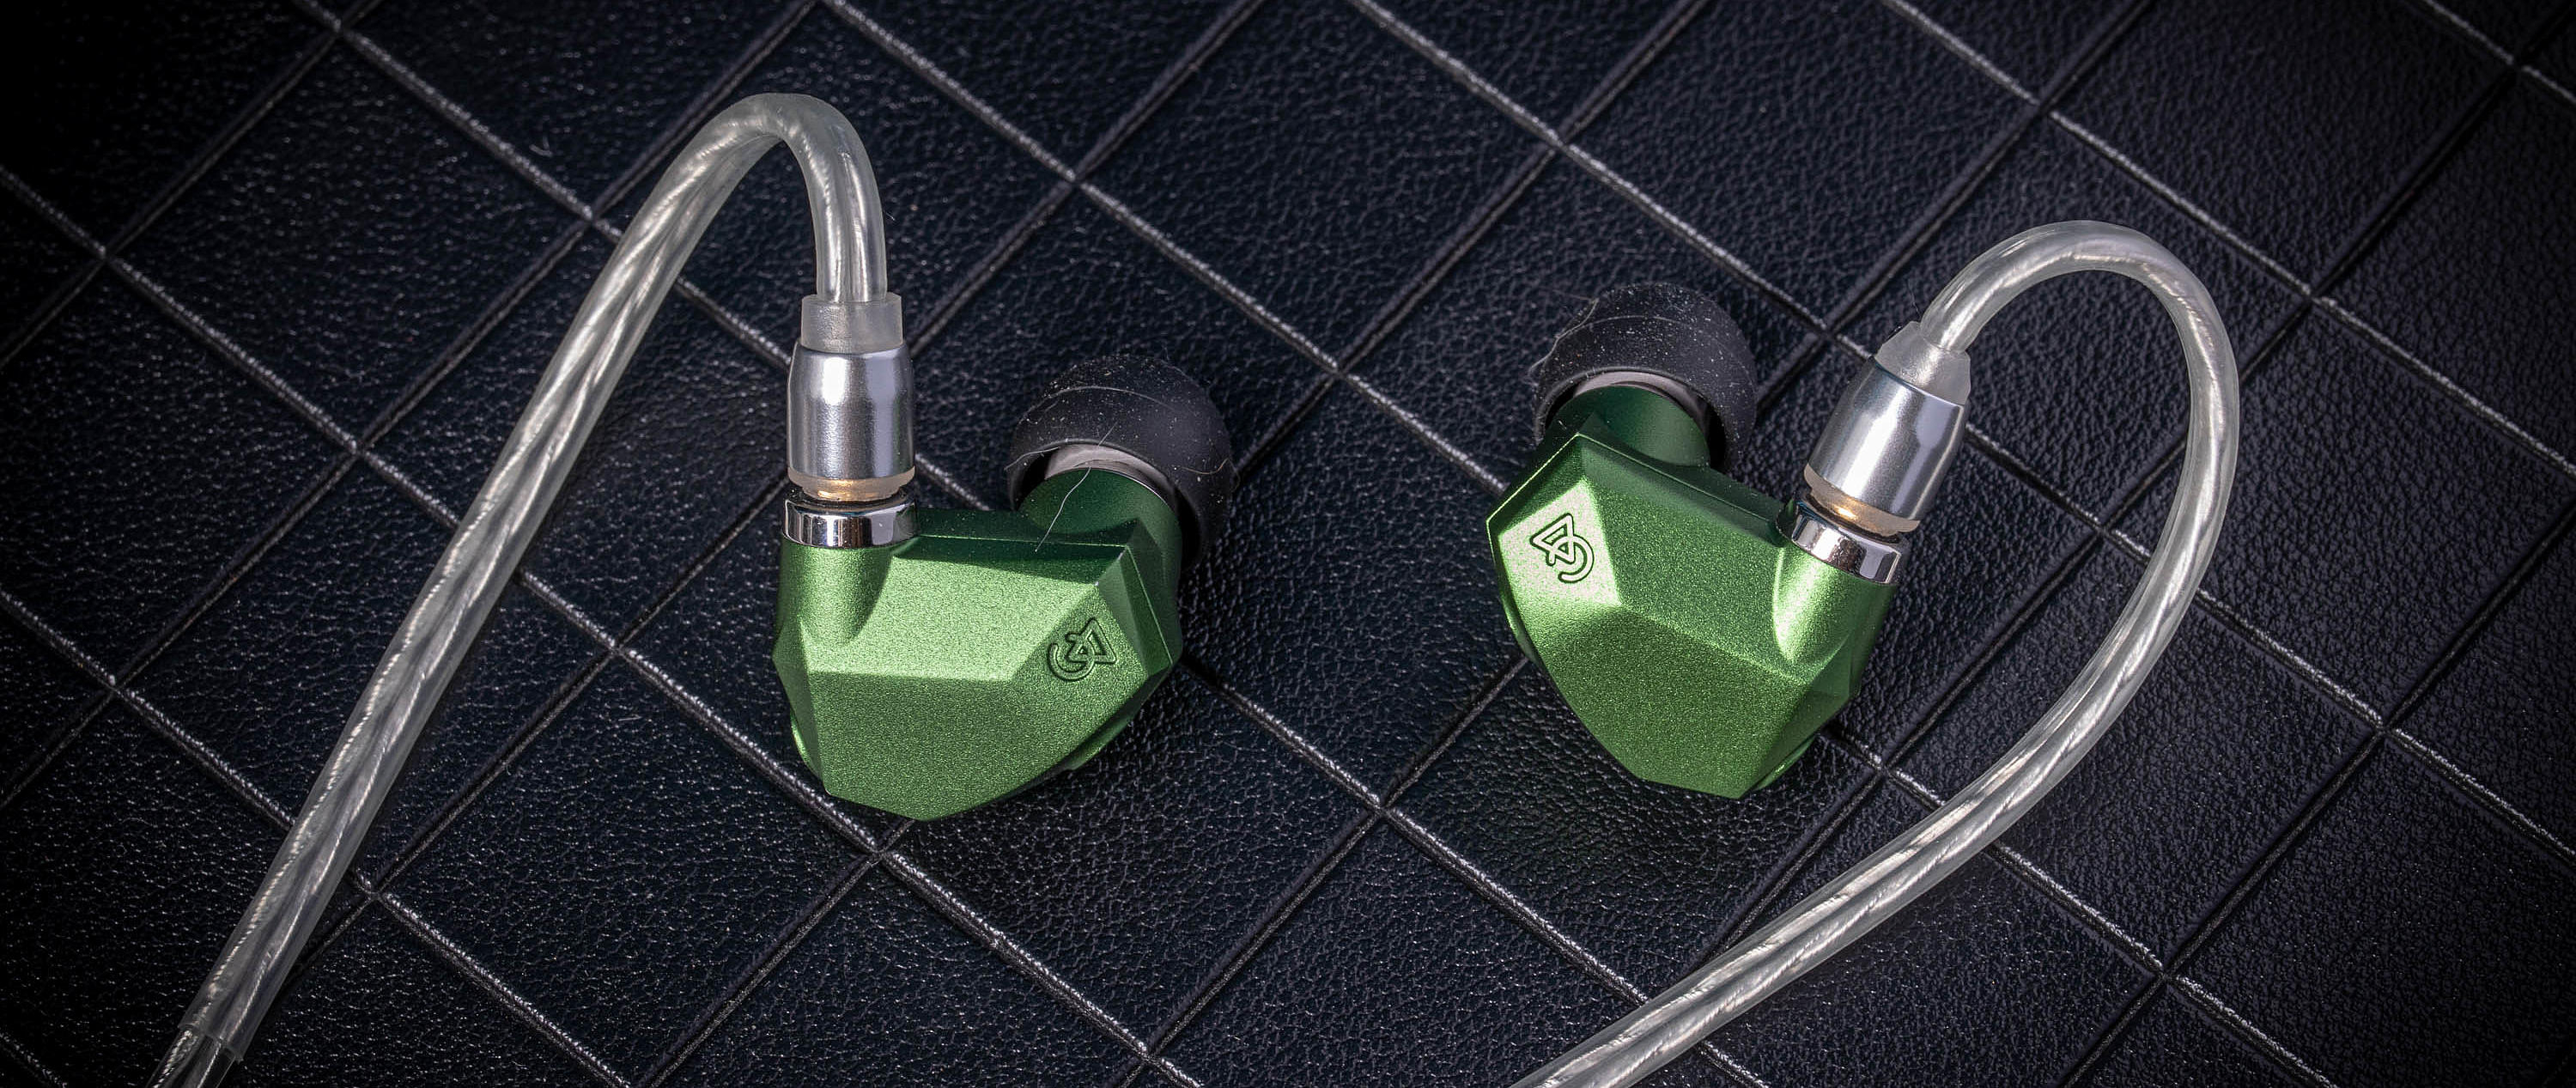 CAMPFIRE AUDIO ANDROMEDA 仙女座2020版入耳式动铁有线耳机绿色3.5mm